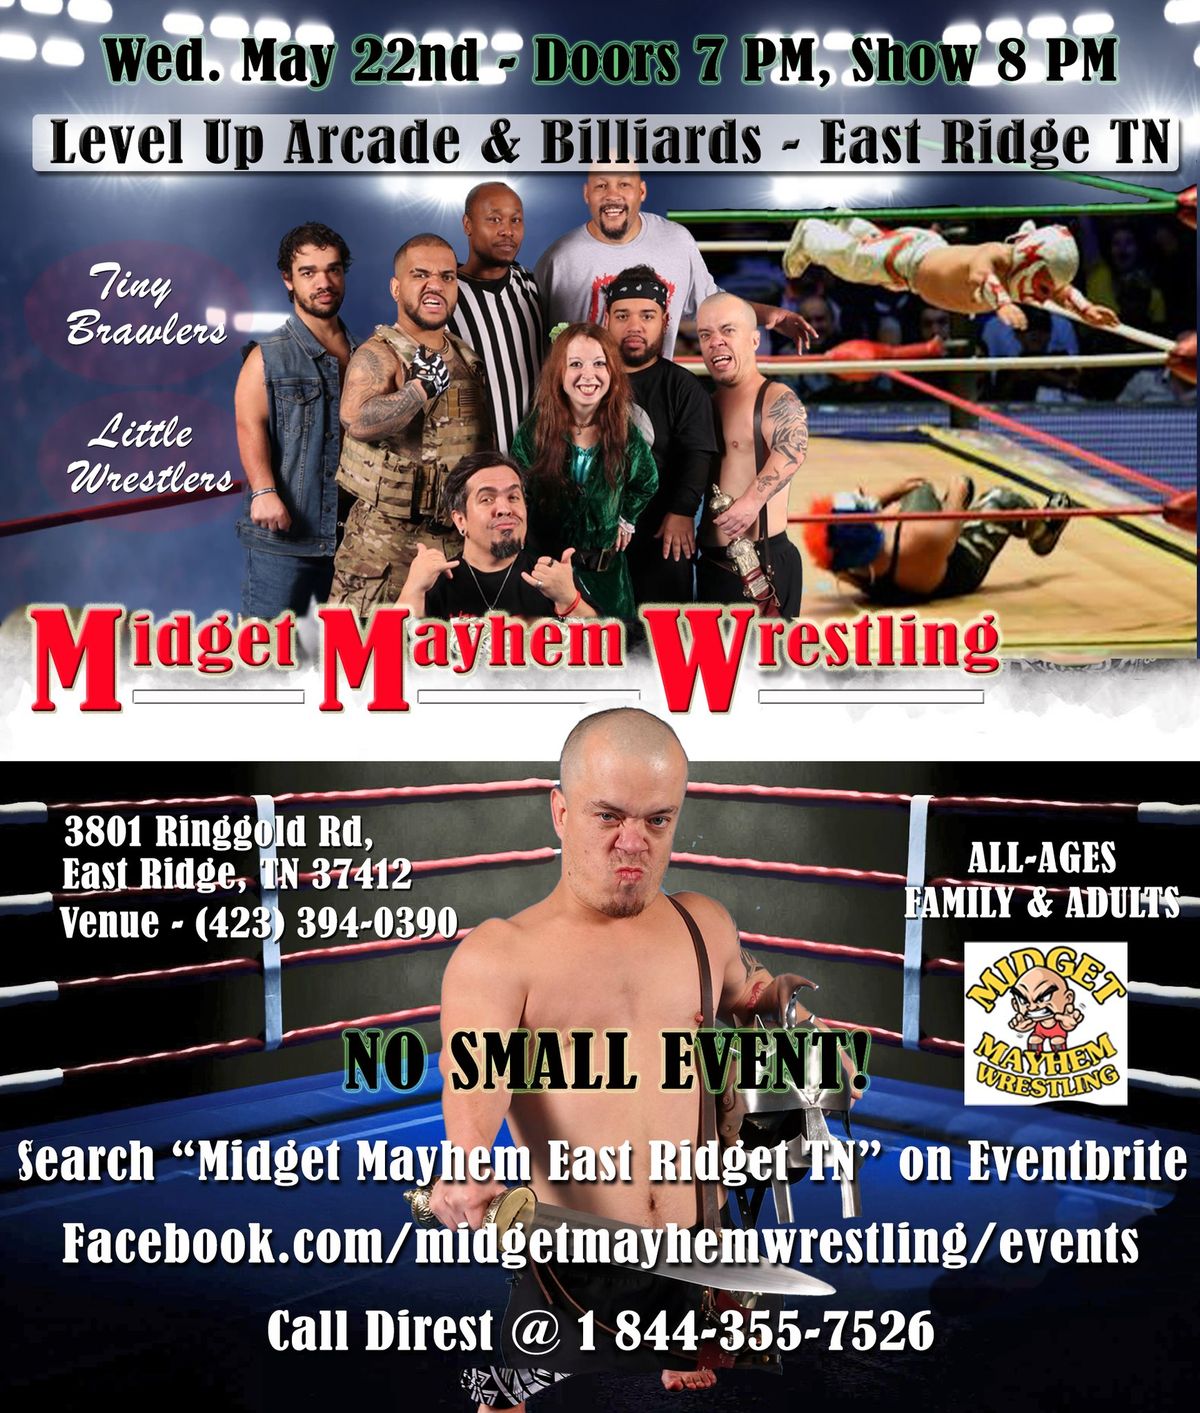 Midget Mayhem Wrestling & Brawling - East Ridge TN (All-Ages)